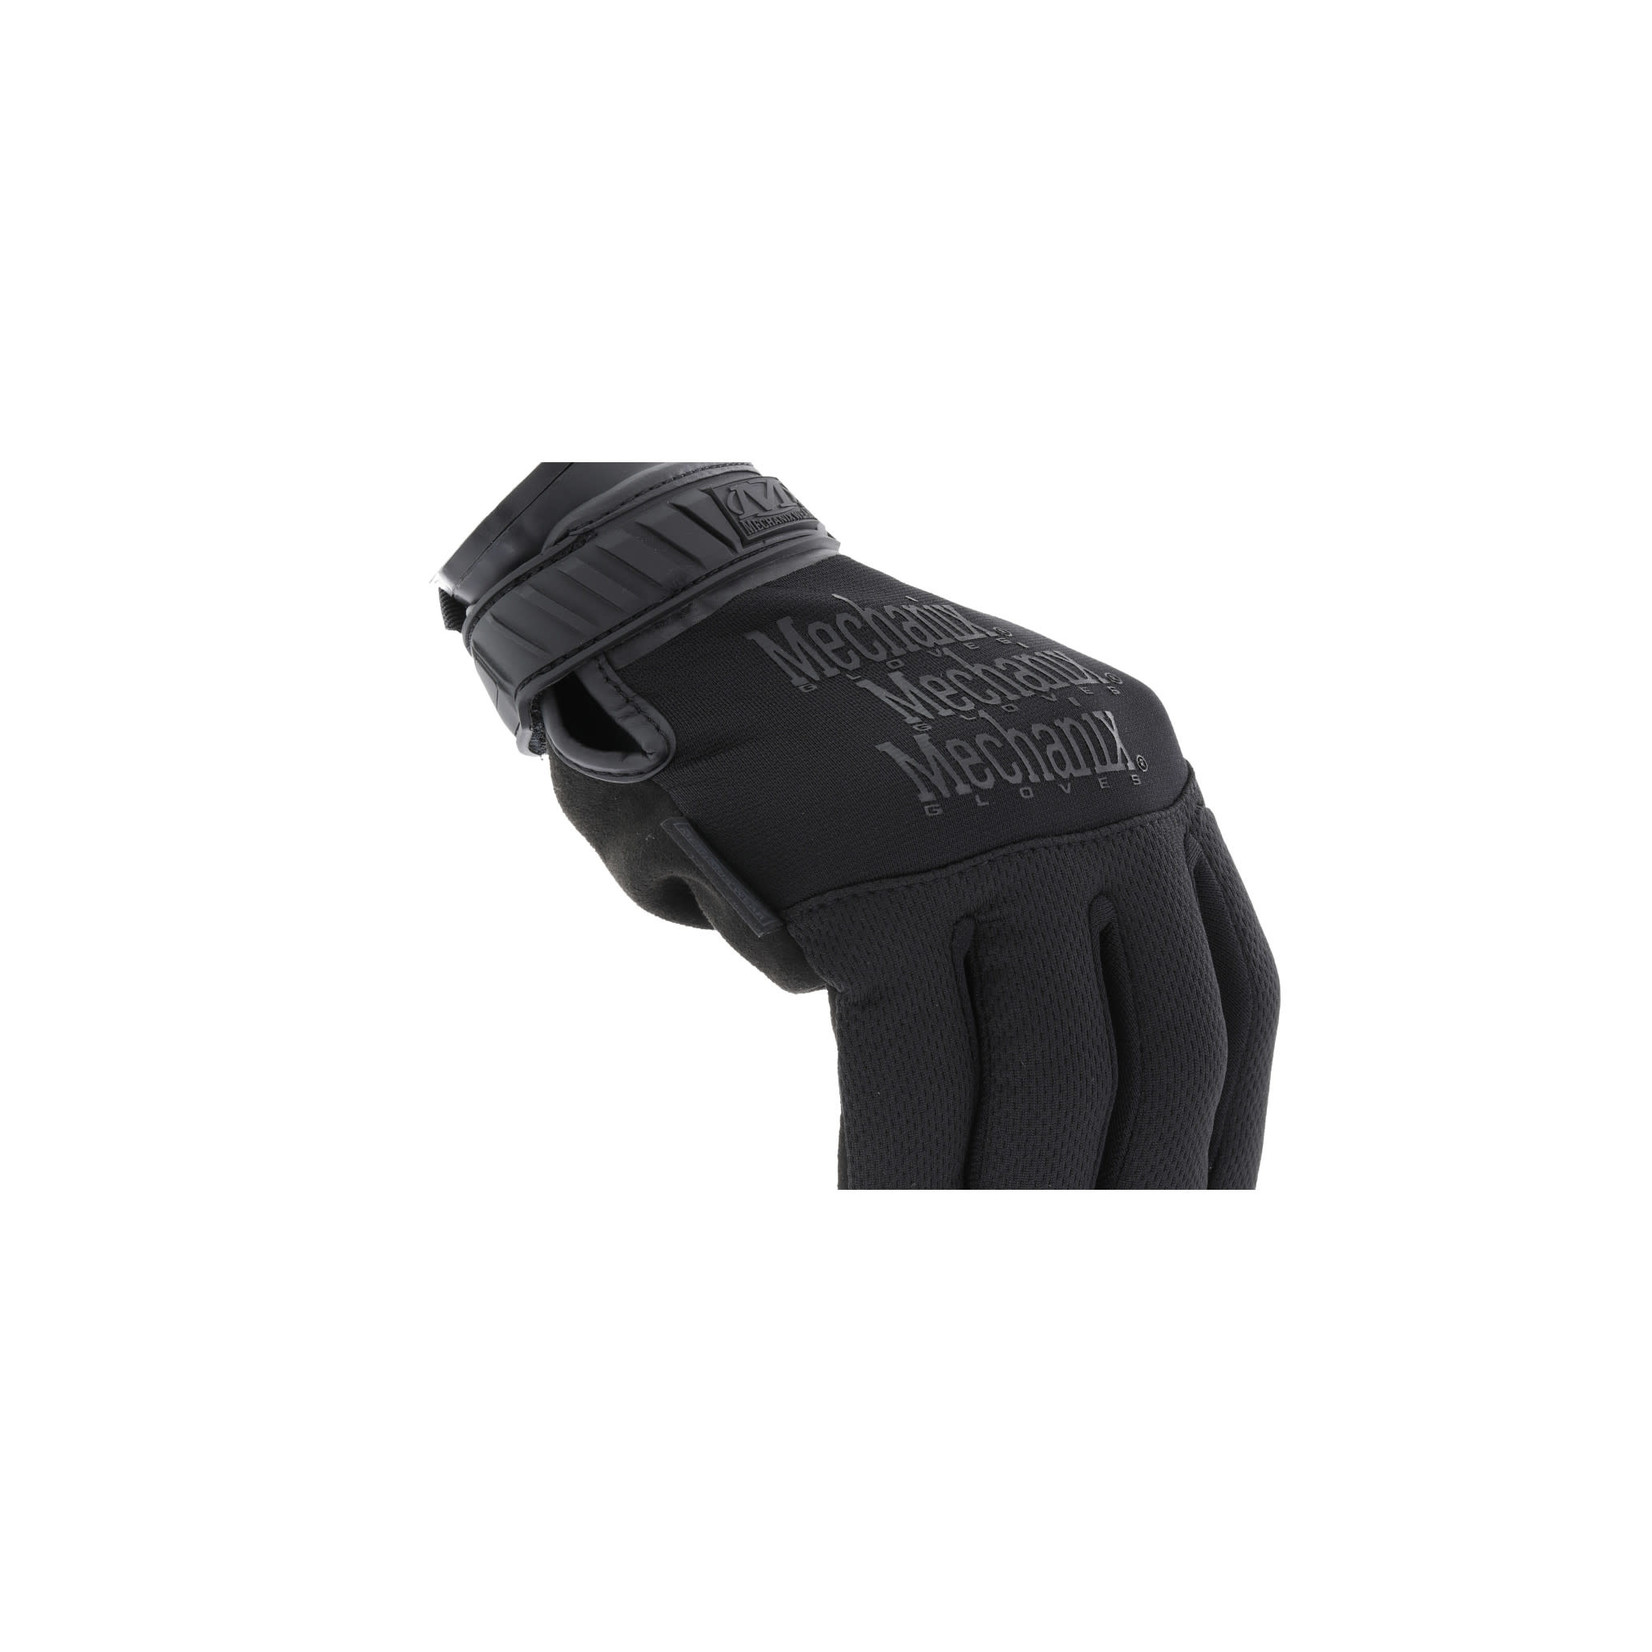 Mechanix Pursuit D5 Cut Resistant Gloves